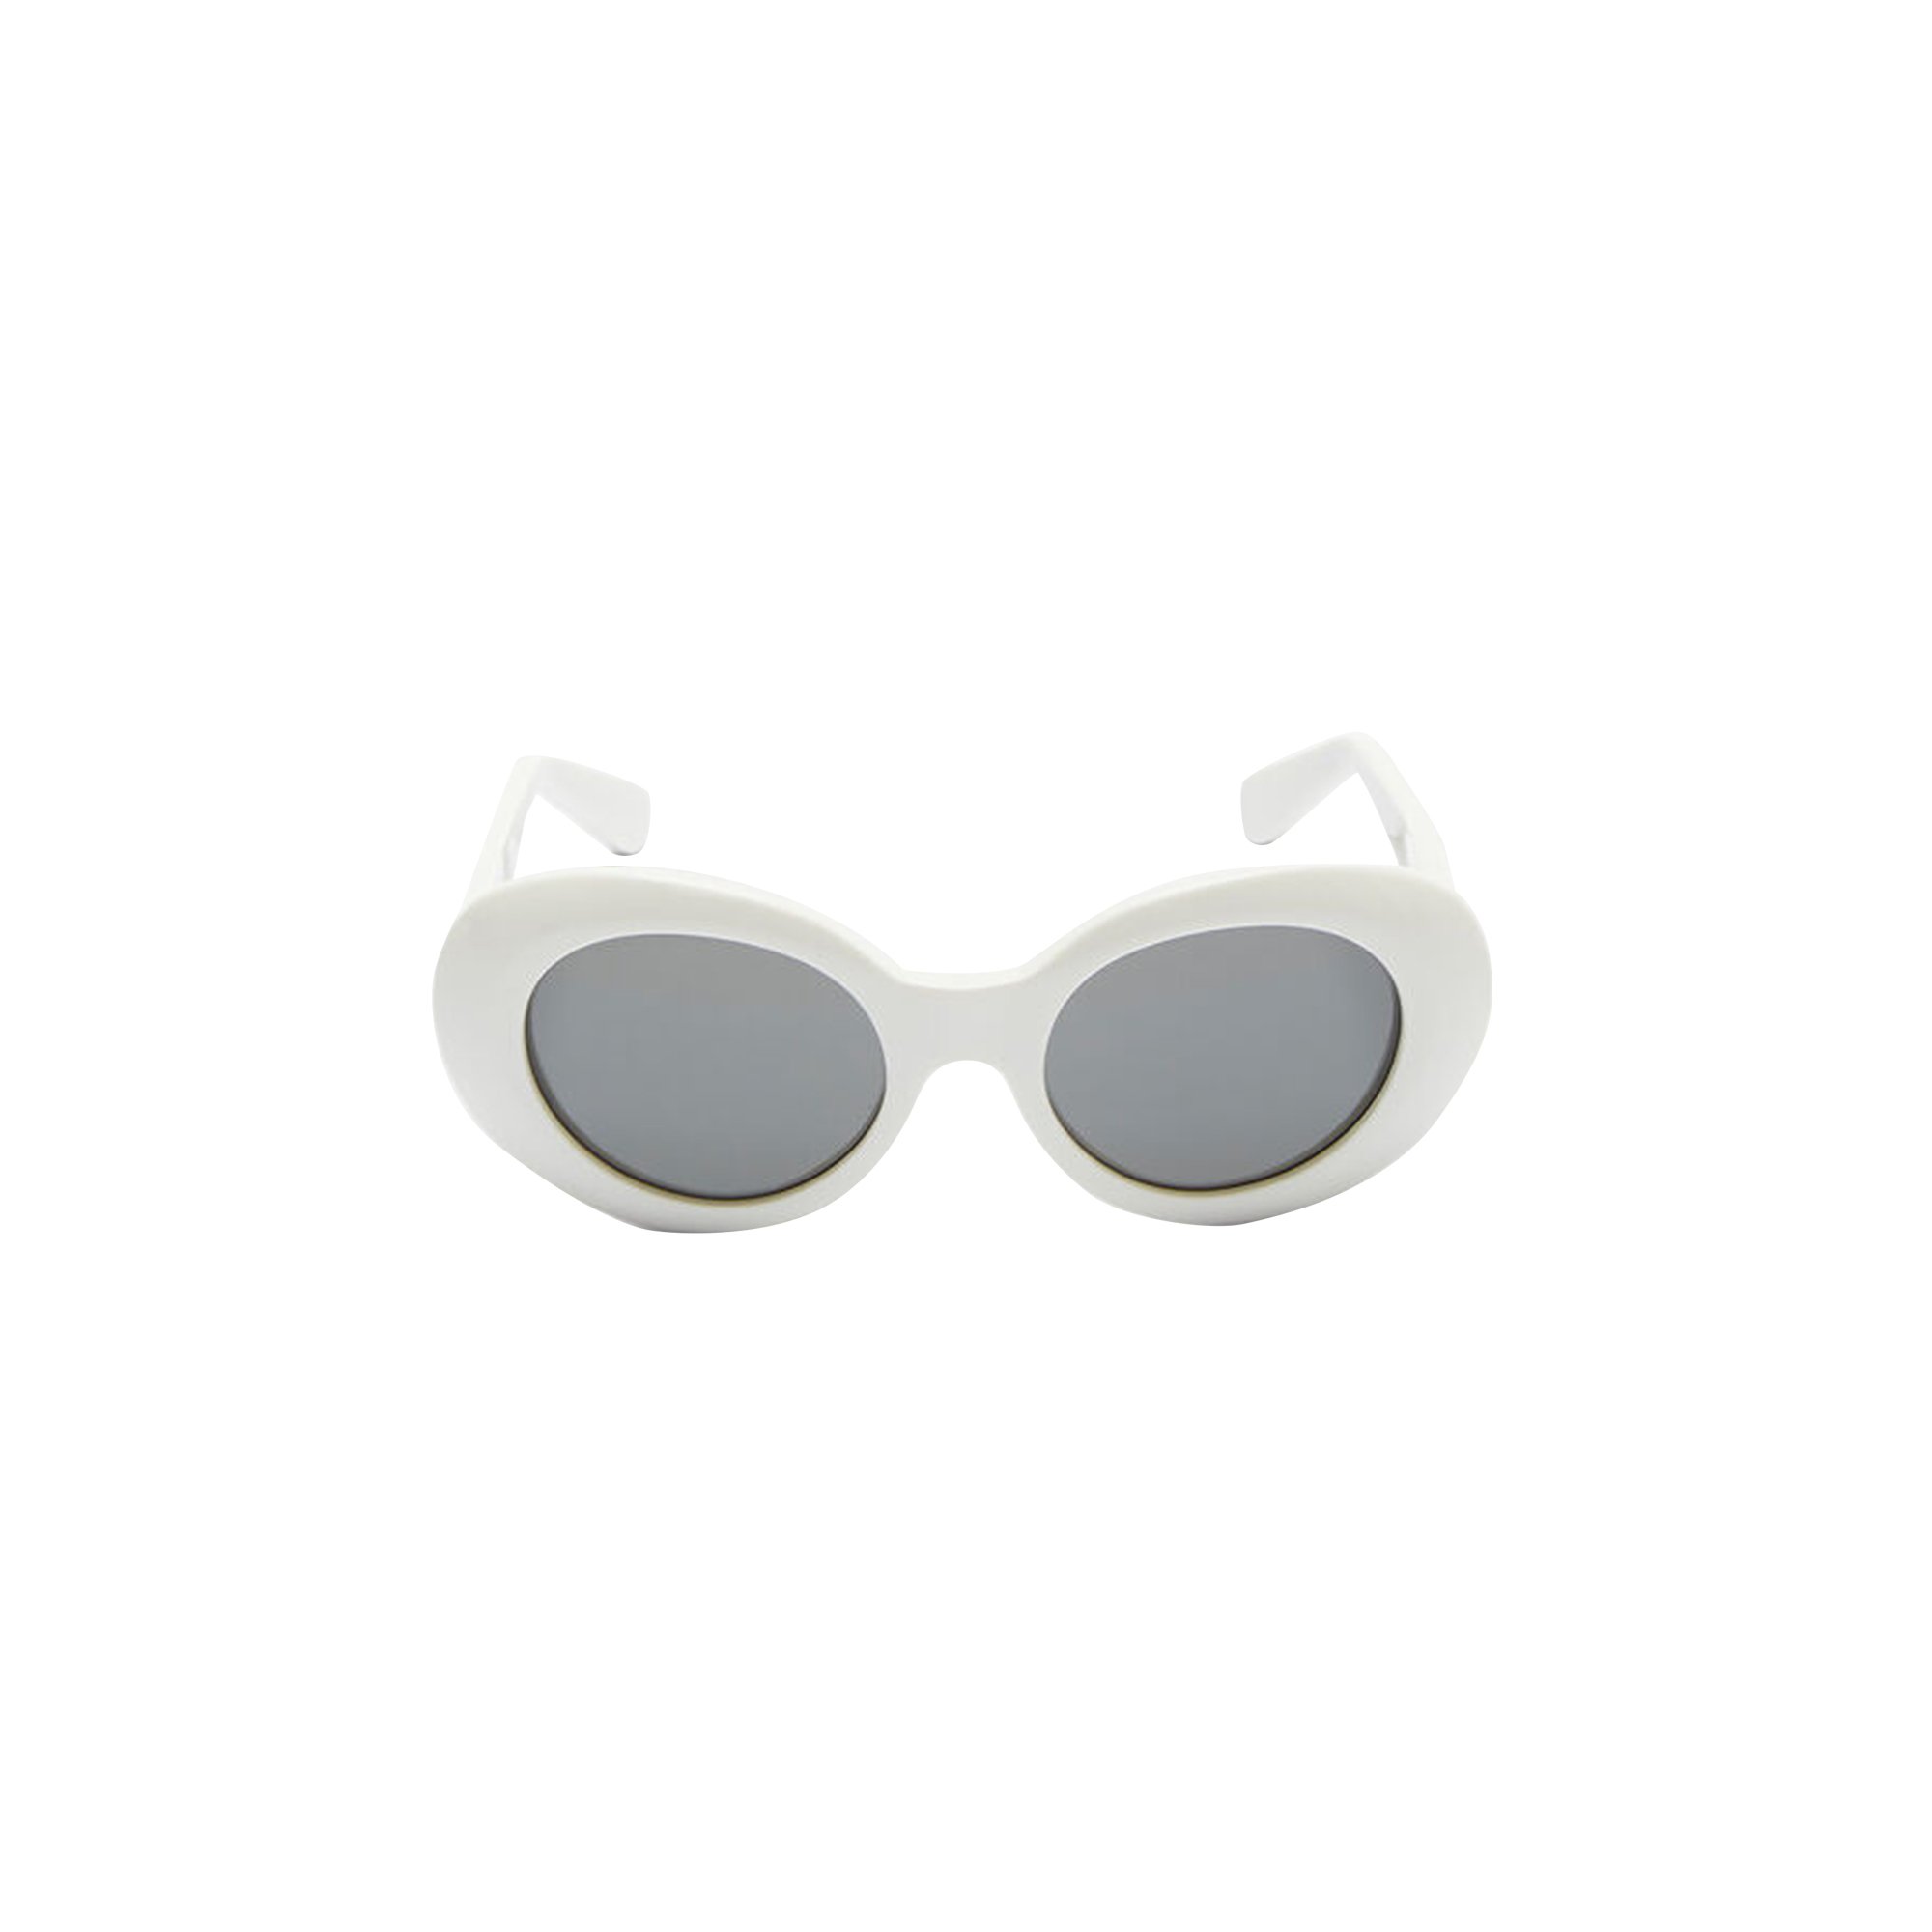 Buy Acne Studios Mustang Sunglasses 'White' - 1624968 WHIT | GOAT